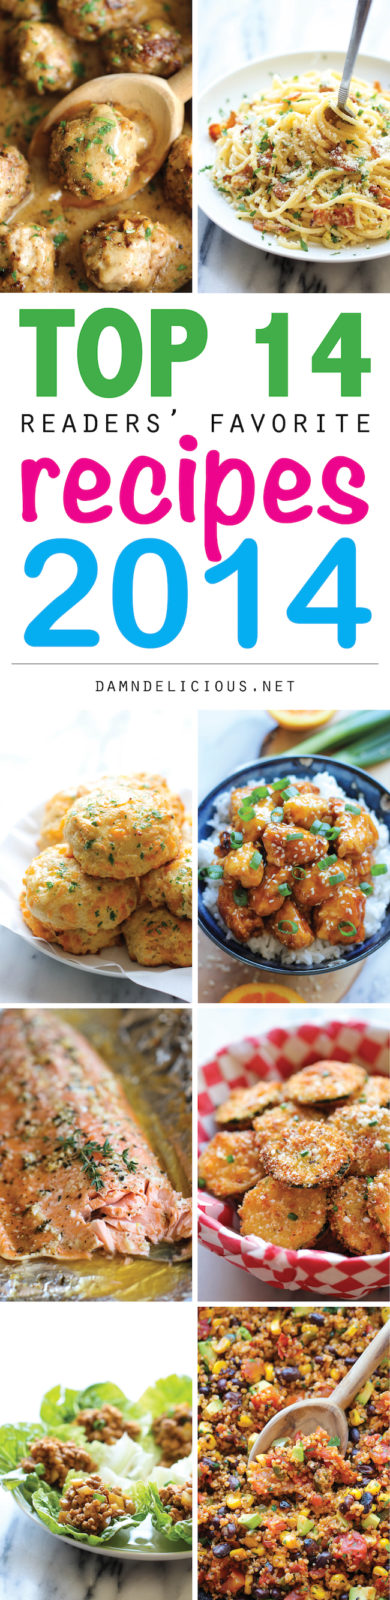 Top 14 Recipes of 2014 - Damn Delicious